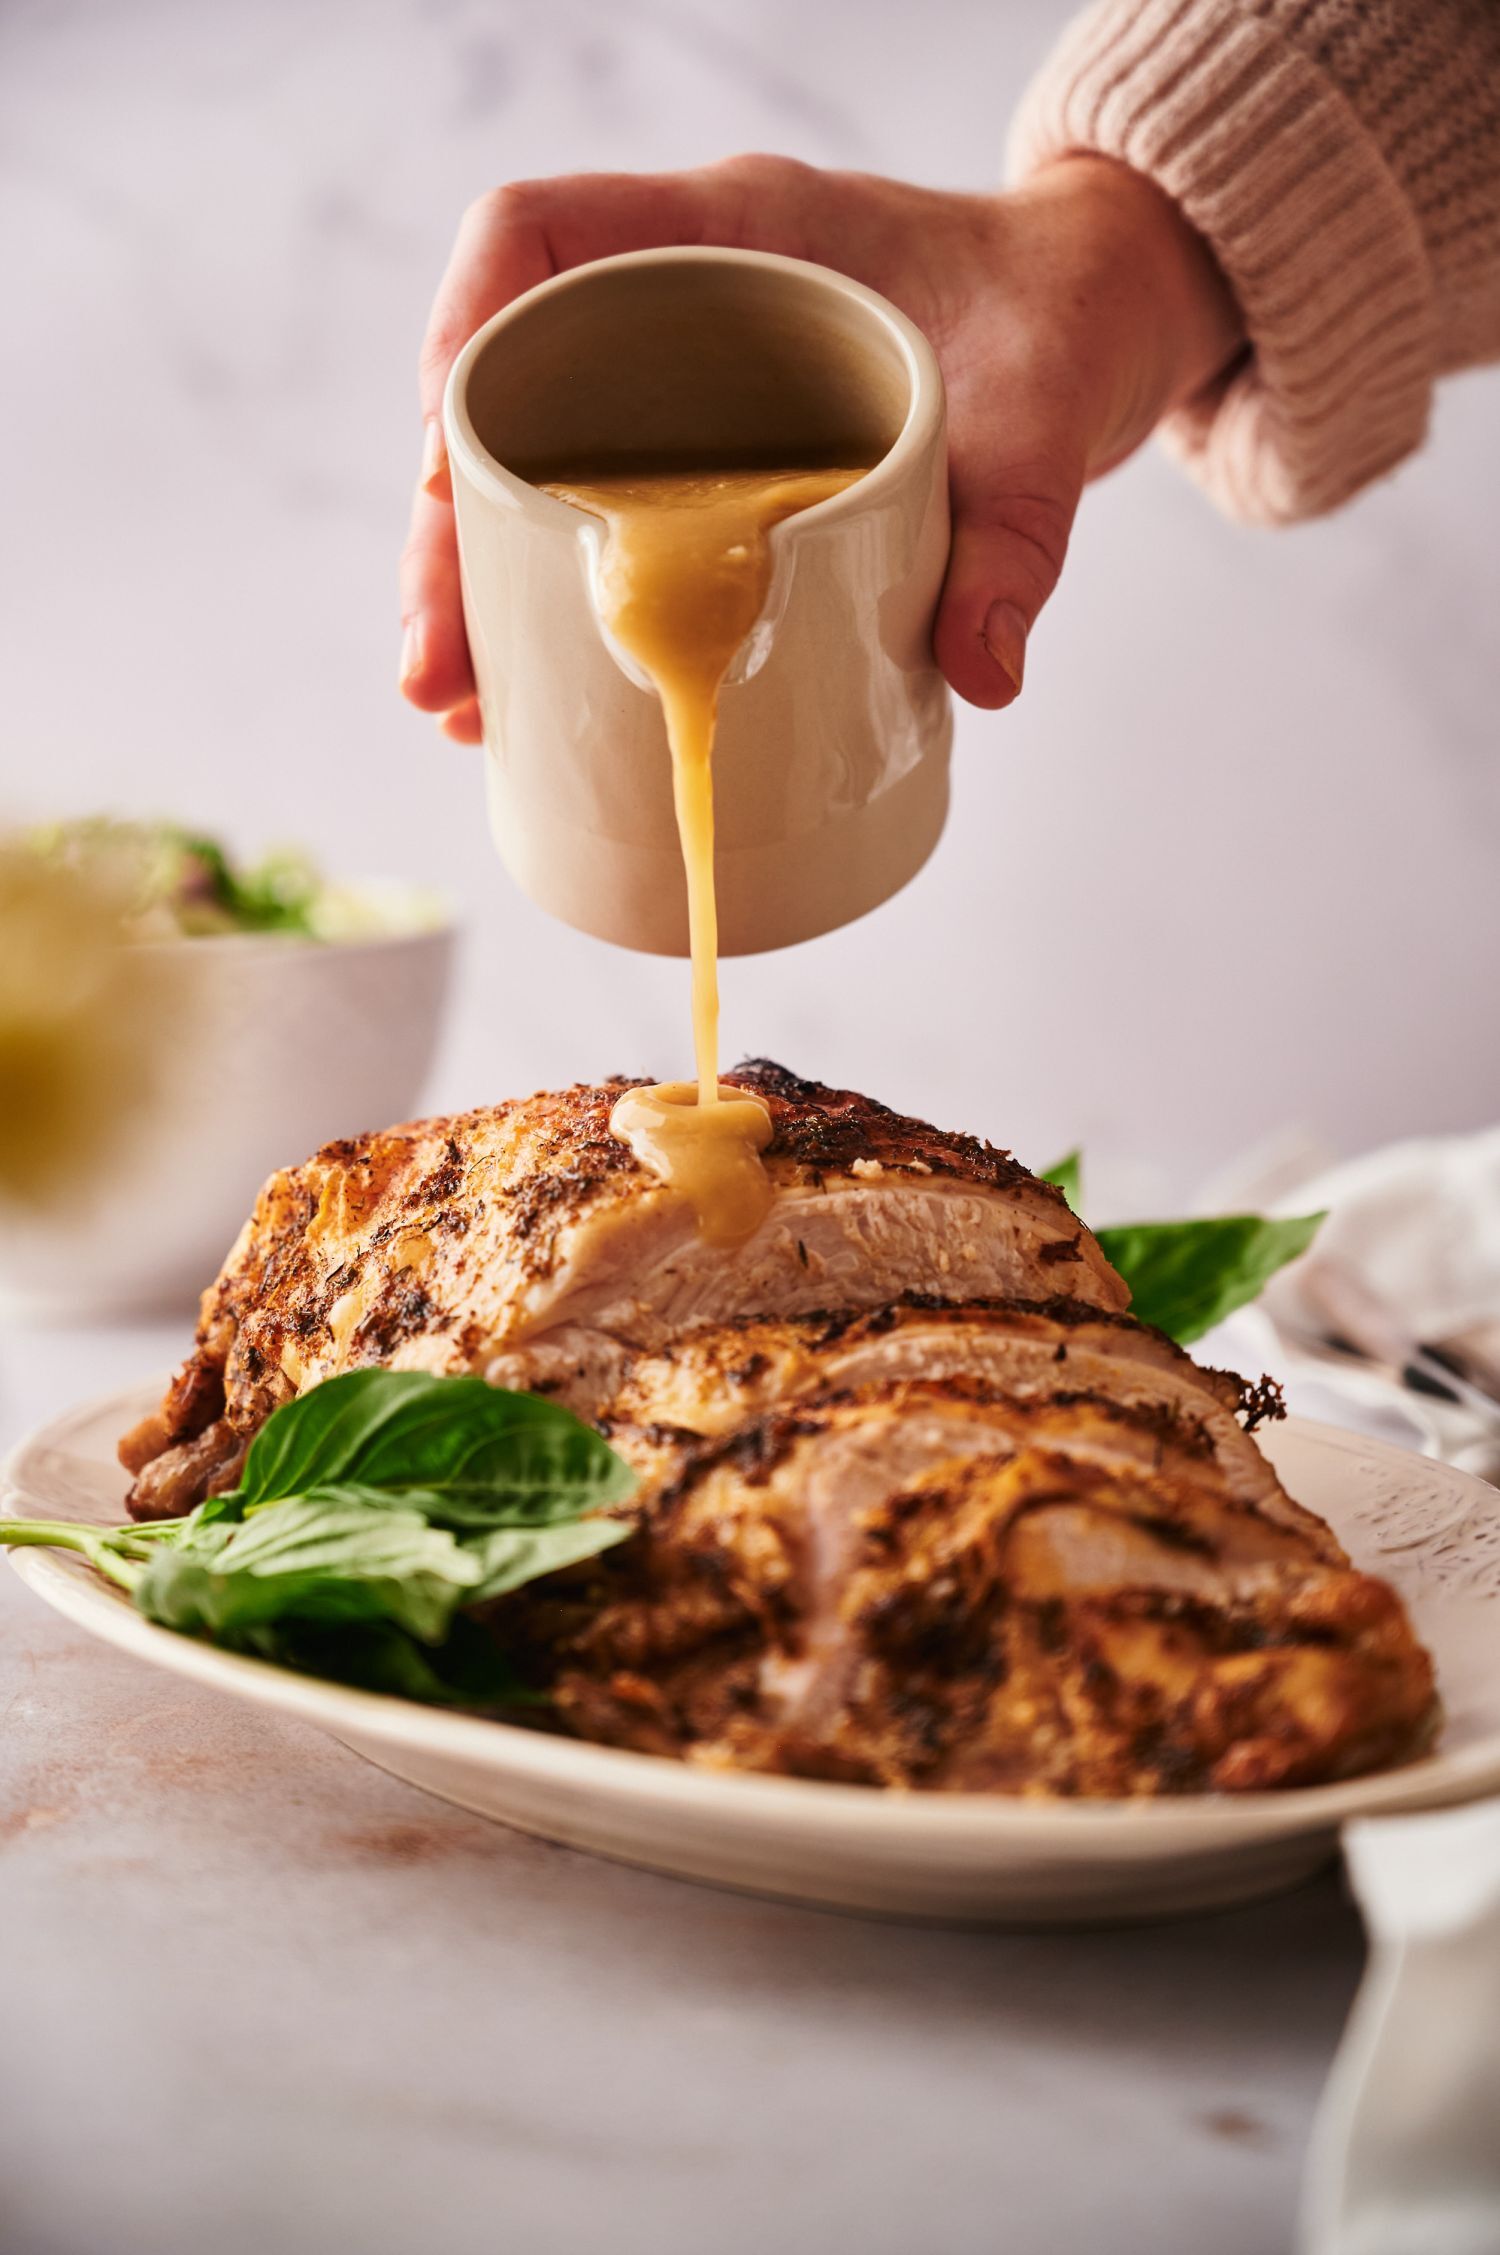 Butterball Boneless Turkey Breast Roast With Gravy Packet, Frozen